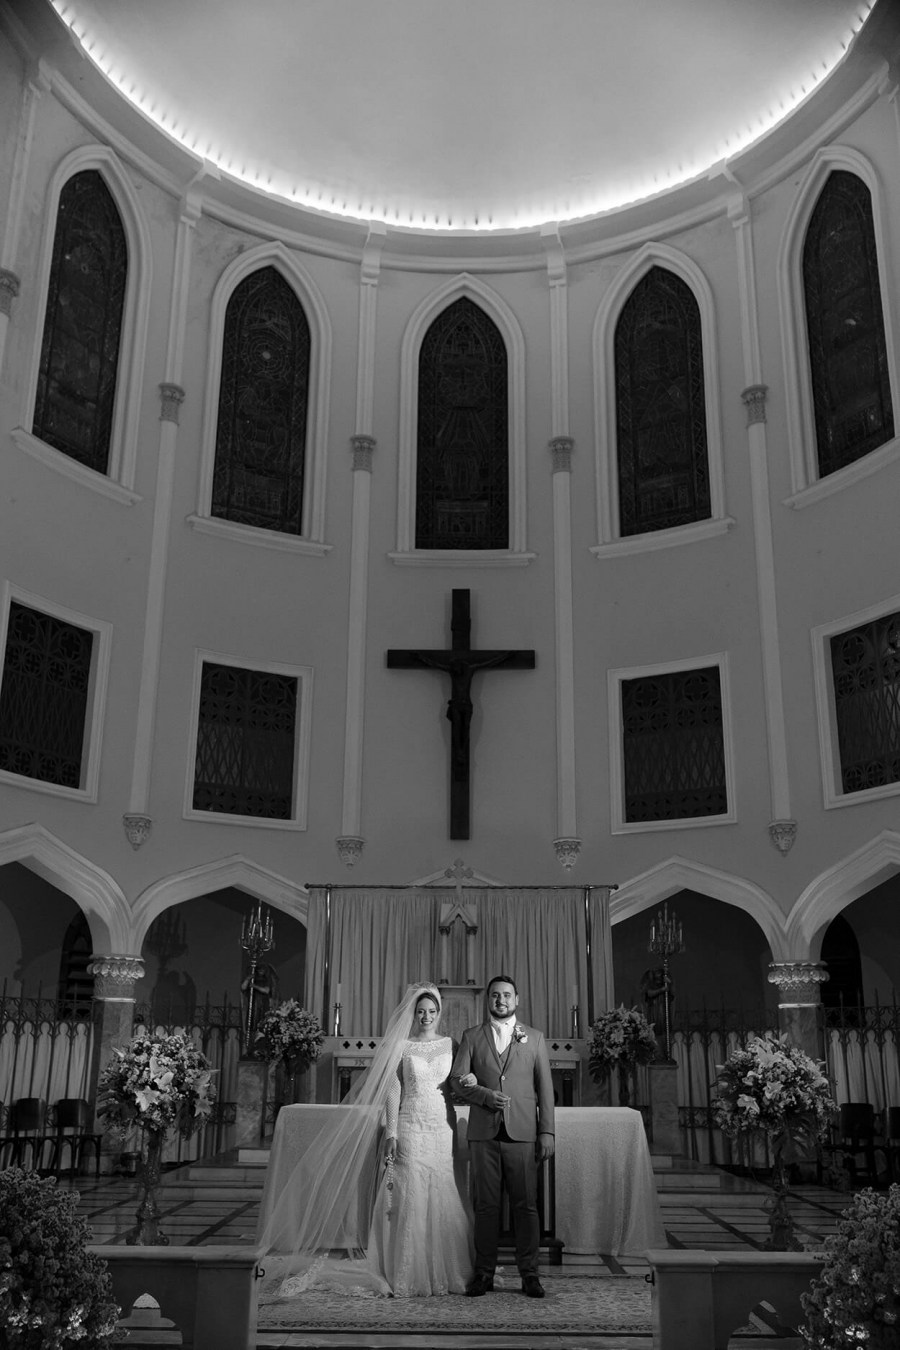  Casamento-na-Igreja (23)